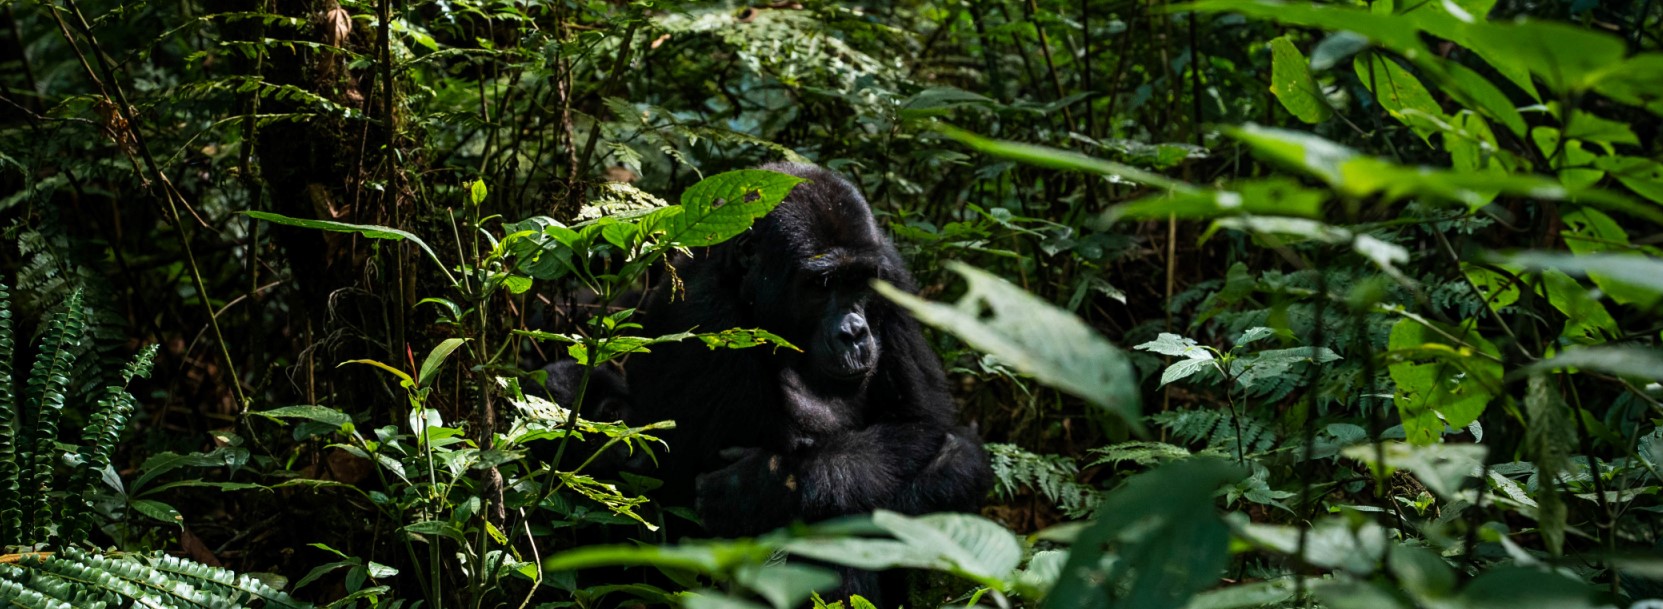 Primates Adventure Safari in Uganda-7 Days